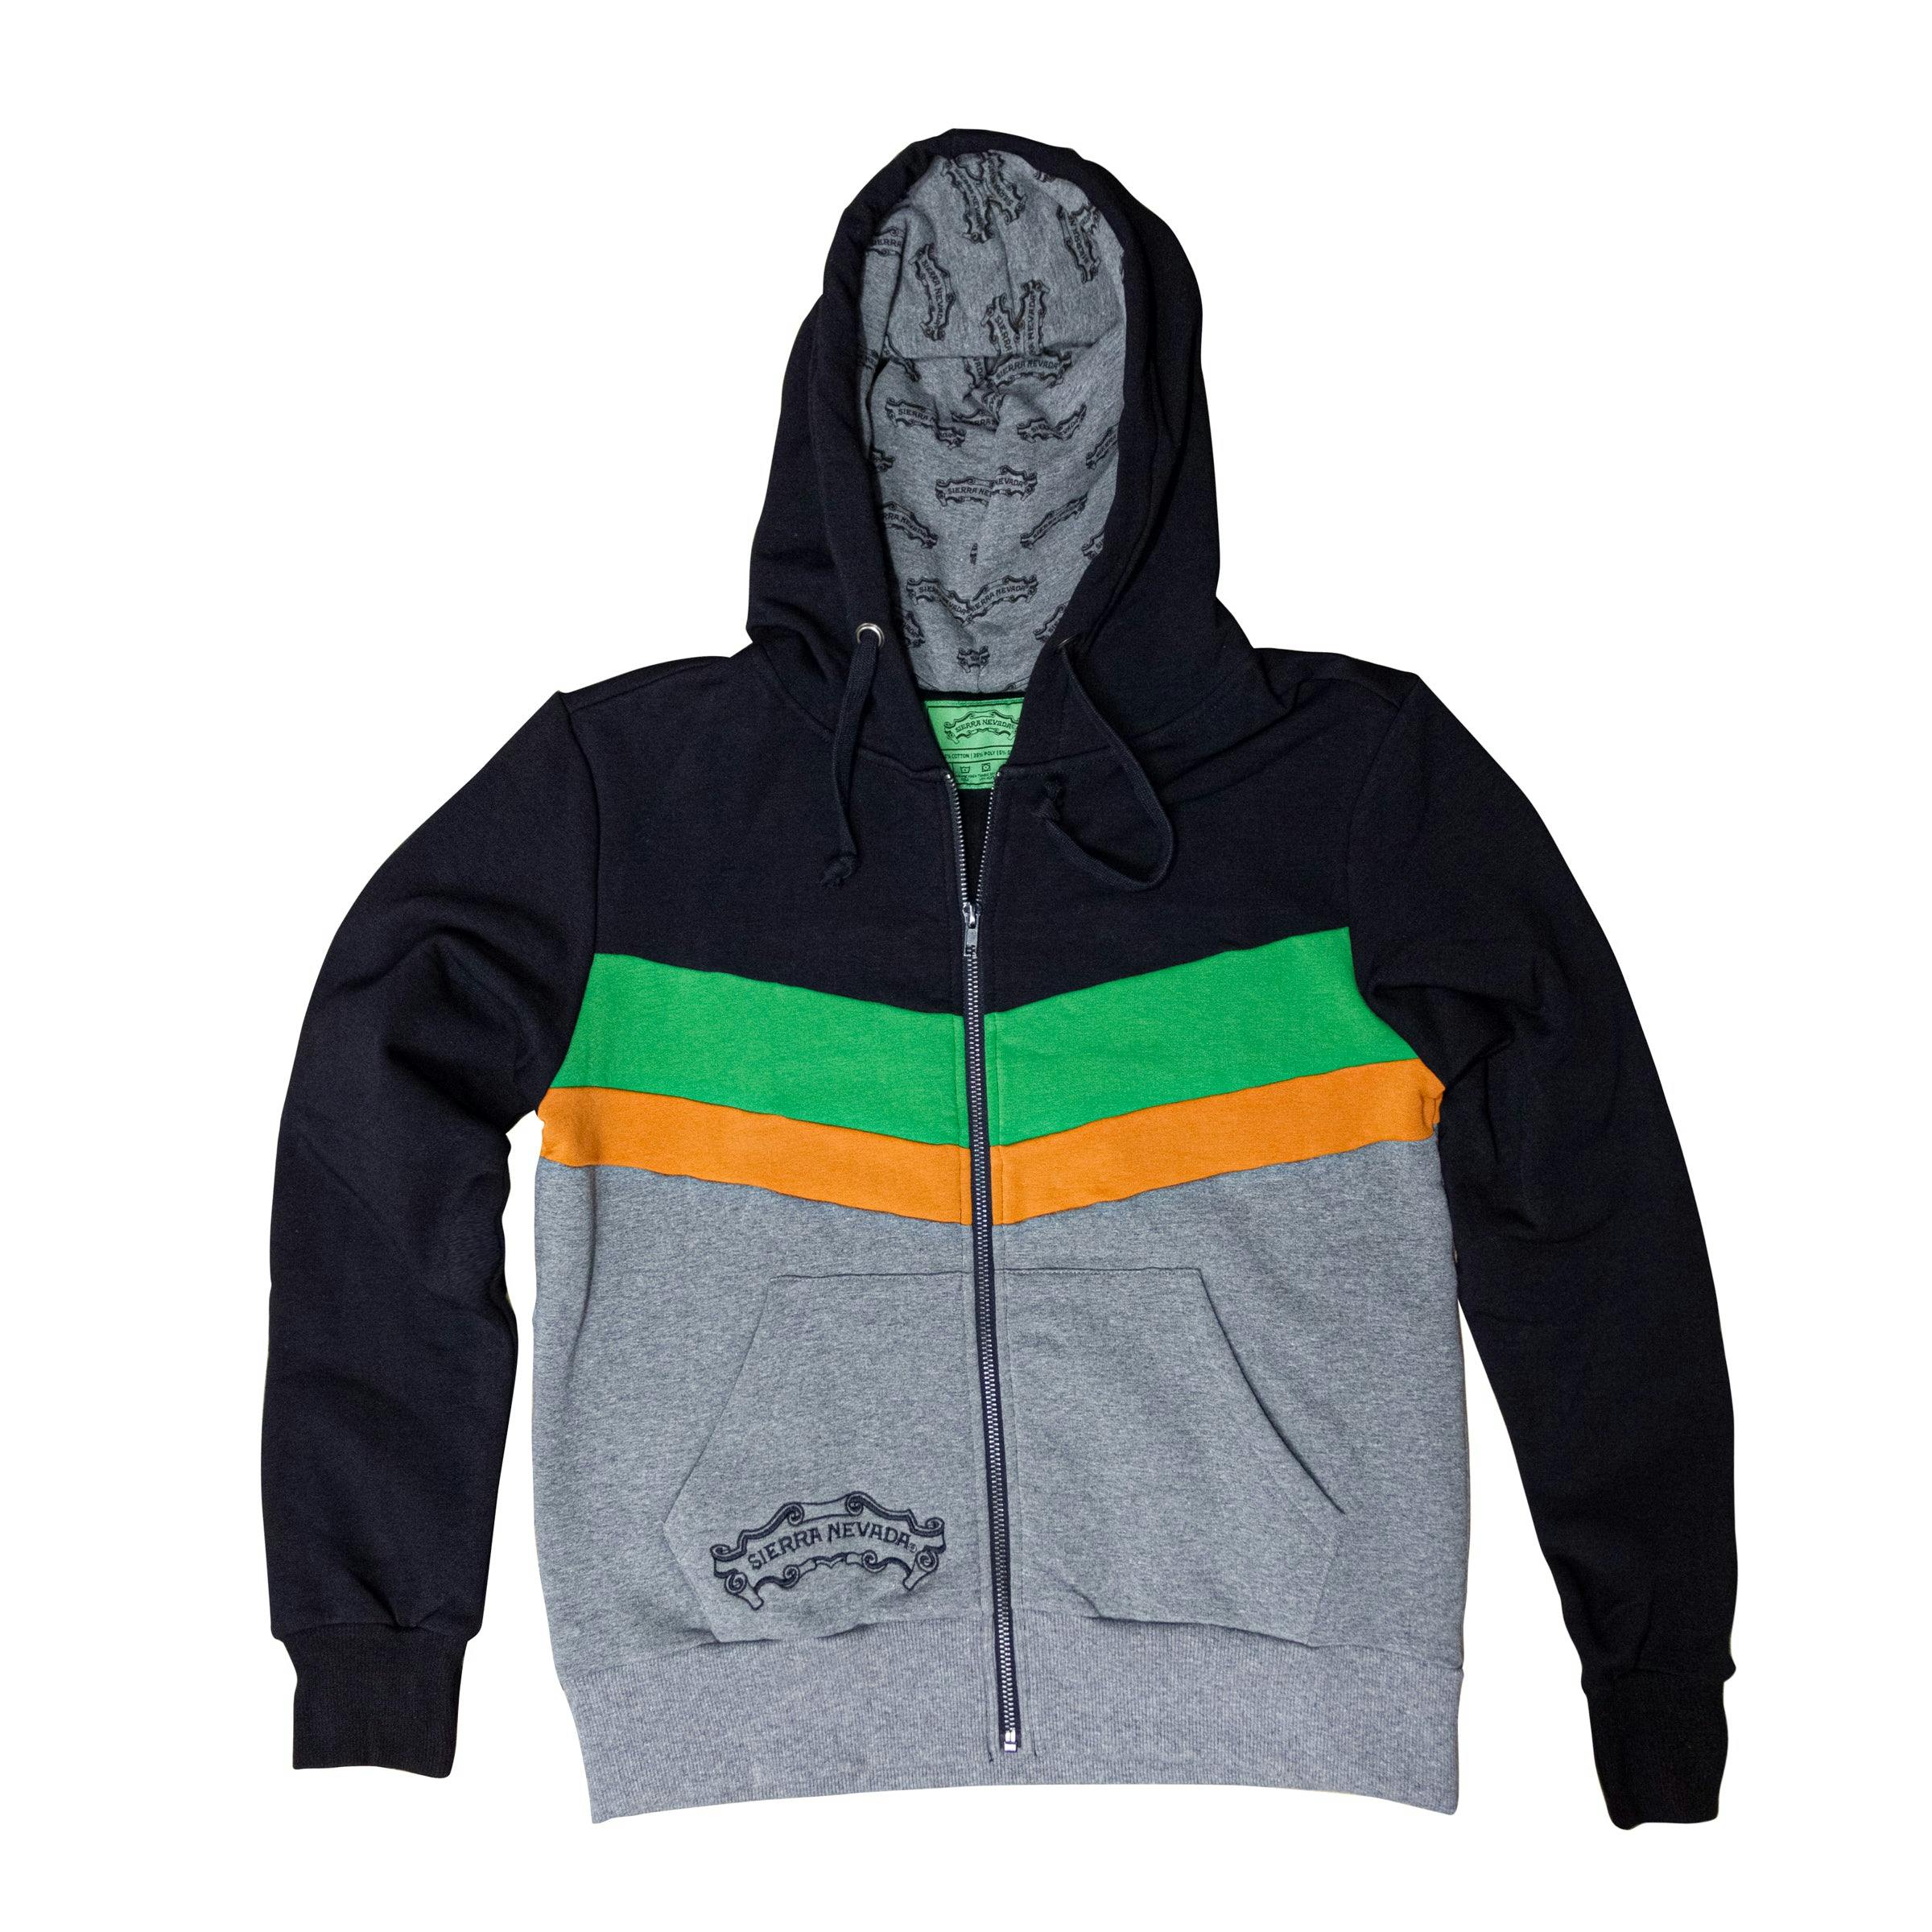 Custom Zip hoodie front image - green and orange keg stripe on hoody